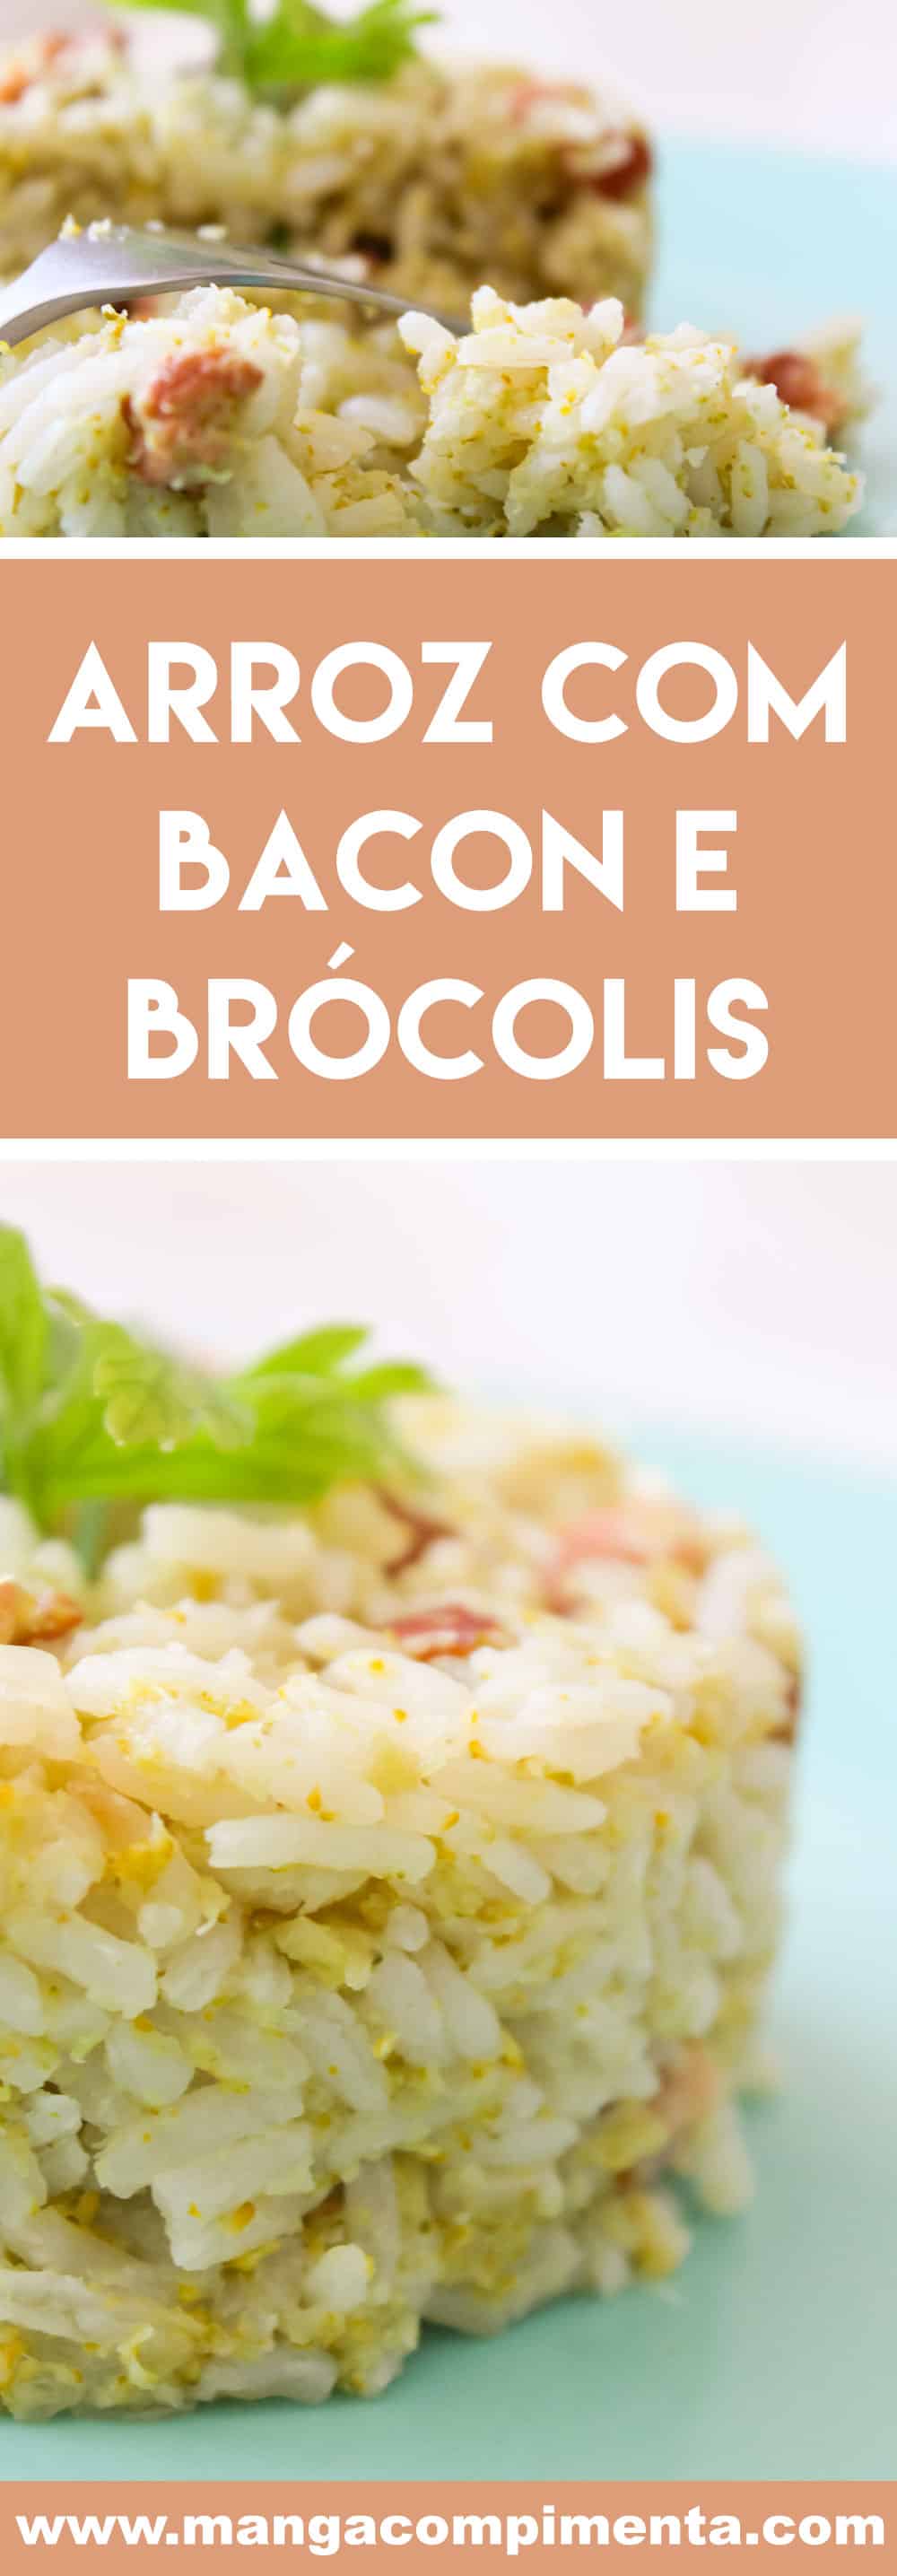 Receita de Arroz com Bacon e Brócolis - prepare um prato diferente para o almoço do final de semana.